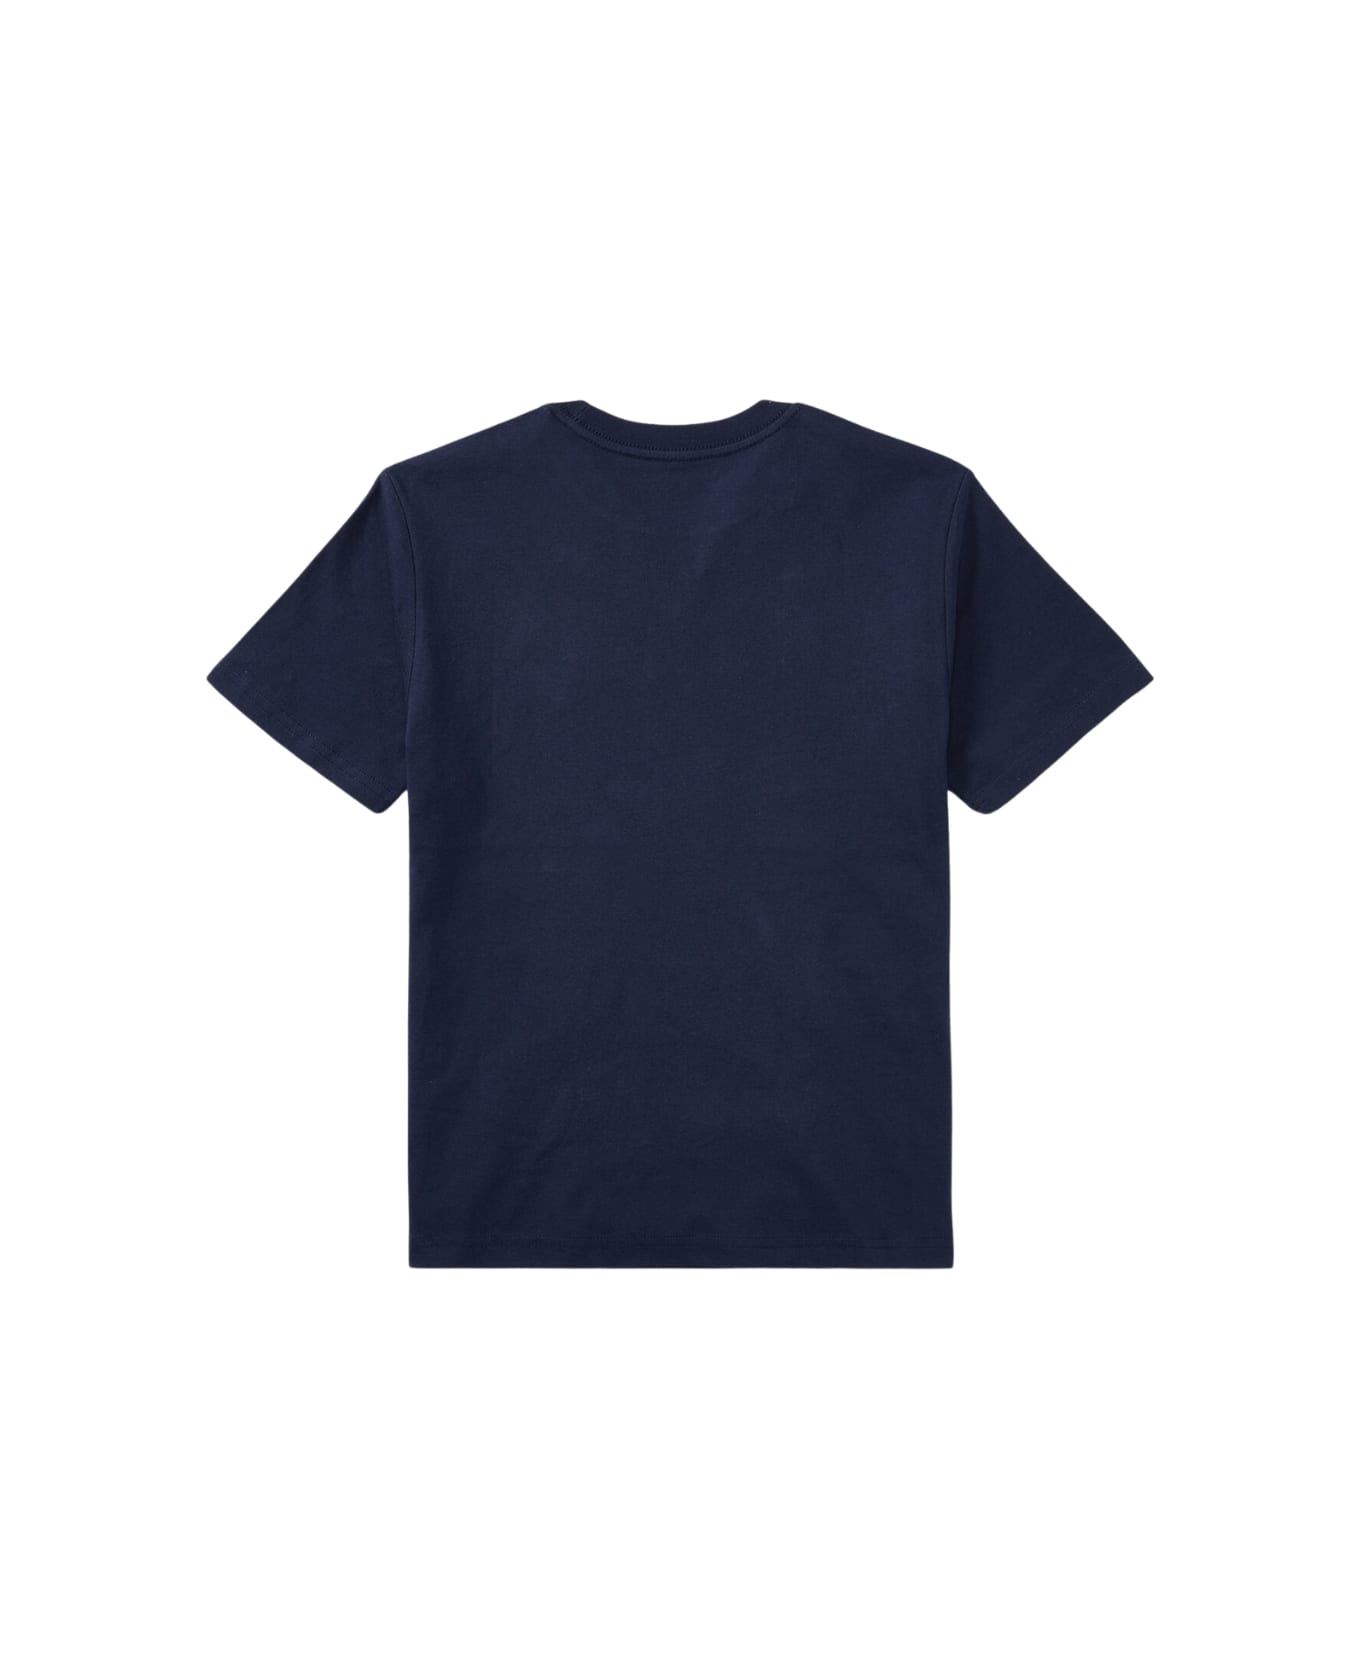 Polo Ralph Lauren Ss Cn-tops-t-shirt - Cruise Navy